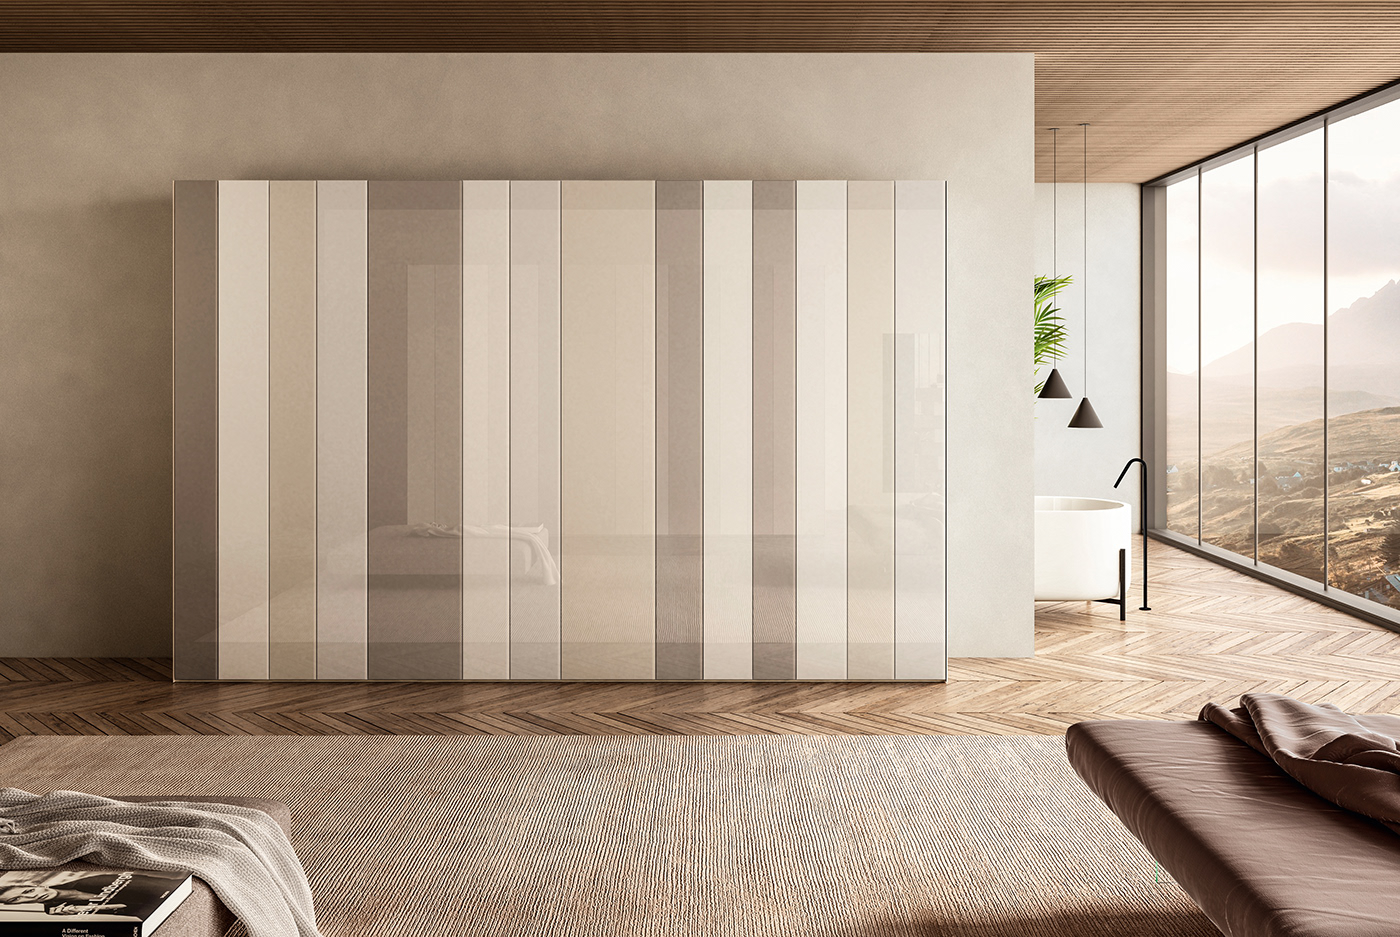 interiordesign Lago design bedroom cozy homedesign modern rendering